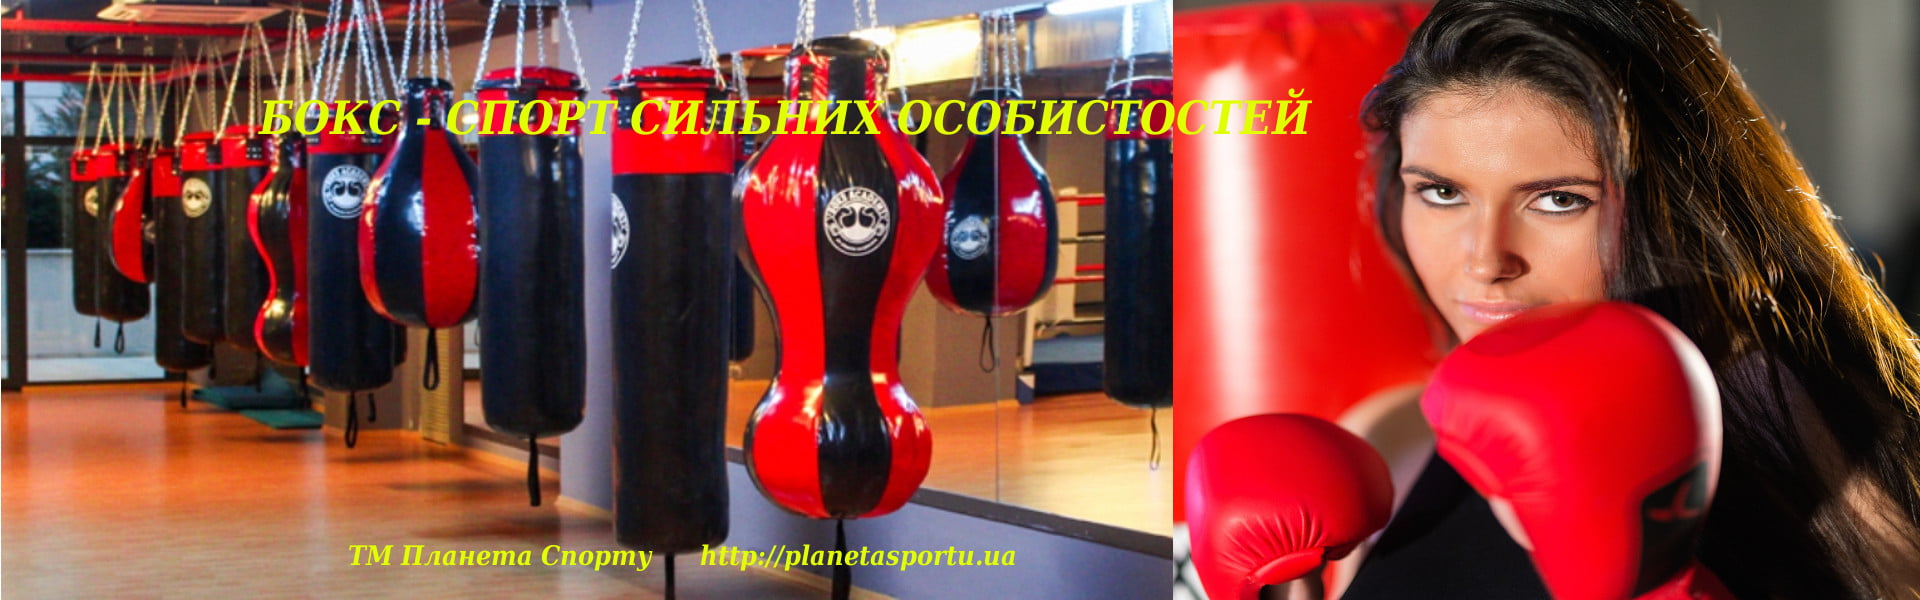 <p>Український виробник екіпірування та обладнання для єдиноборств, оснащення спортивних залів та домашніх спортивних кутків.                </p>
